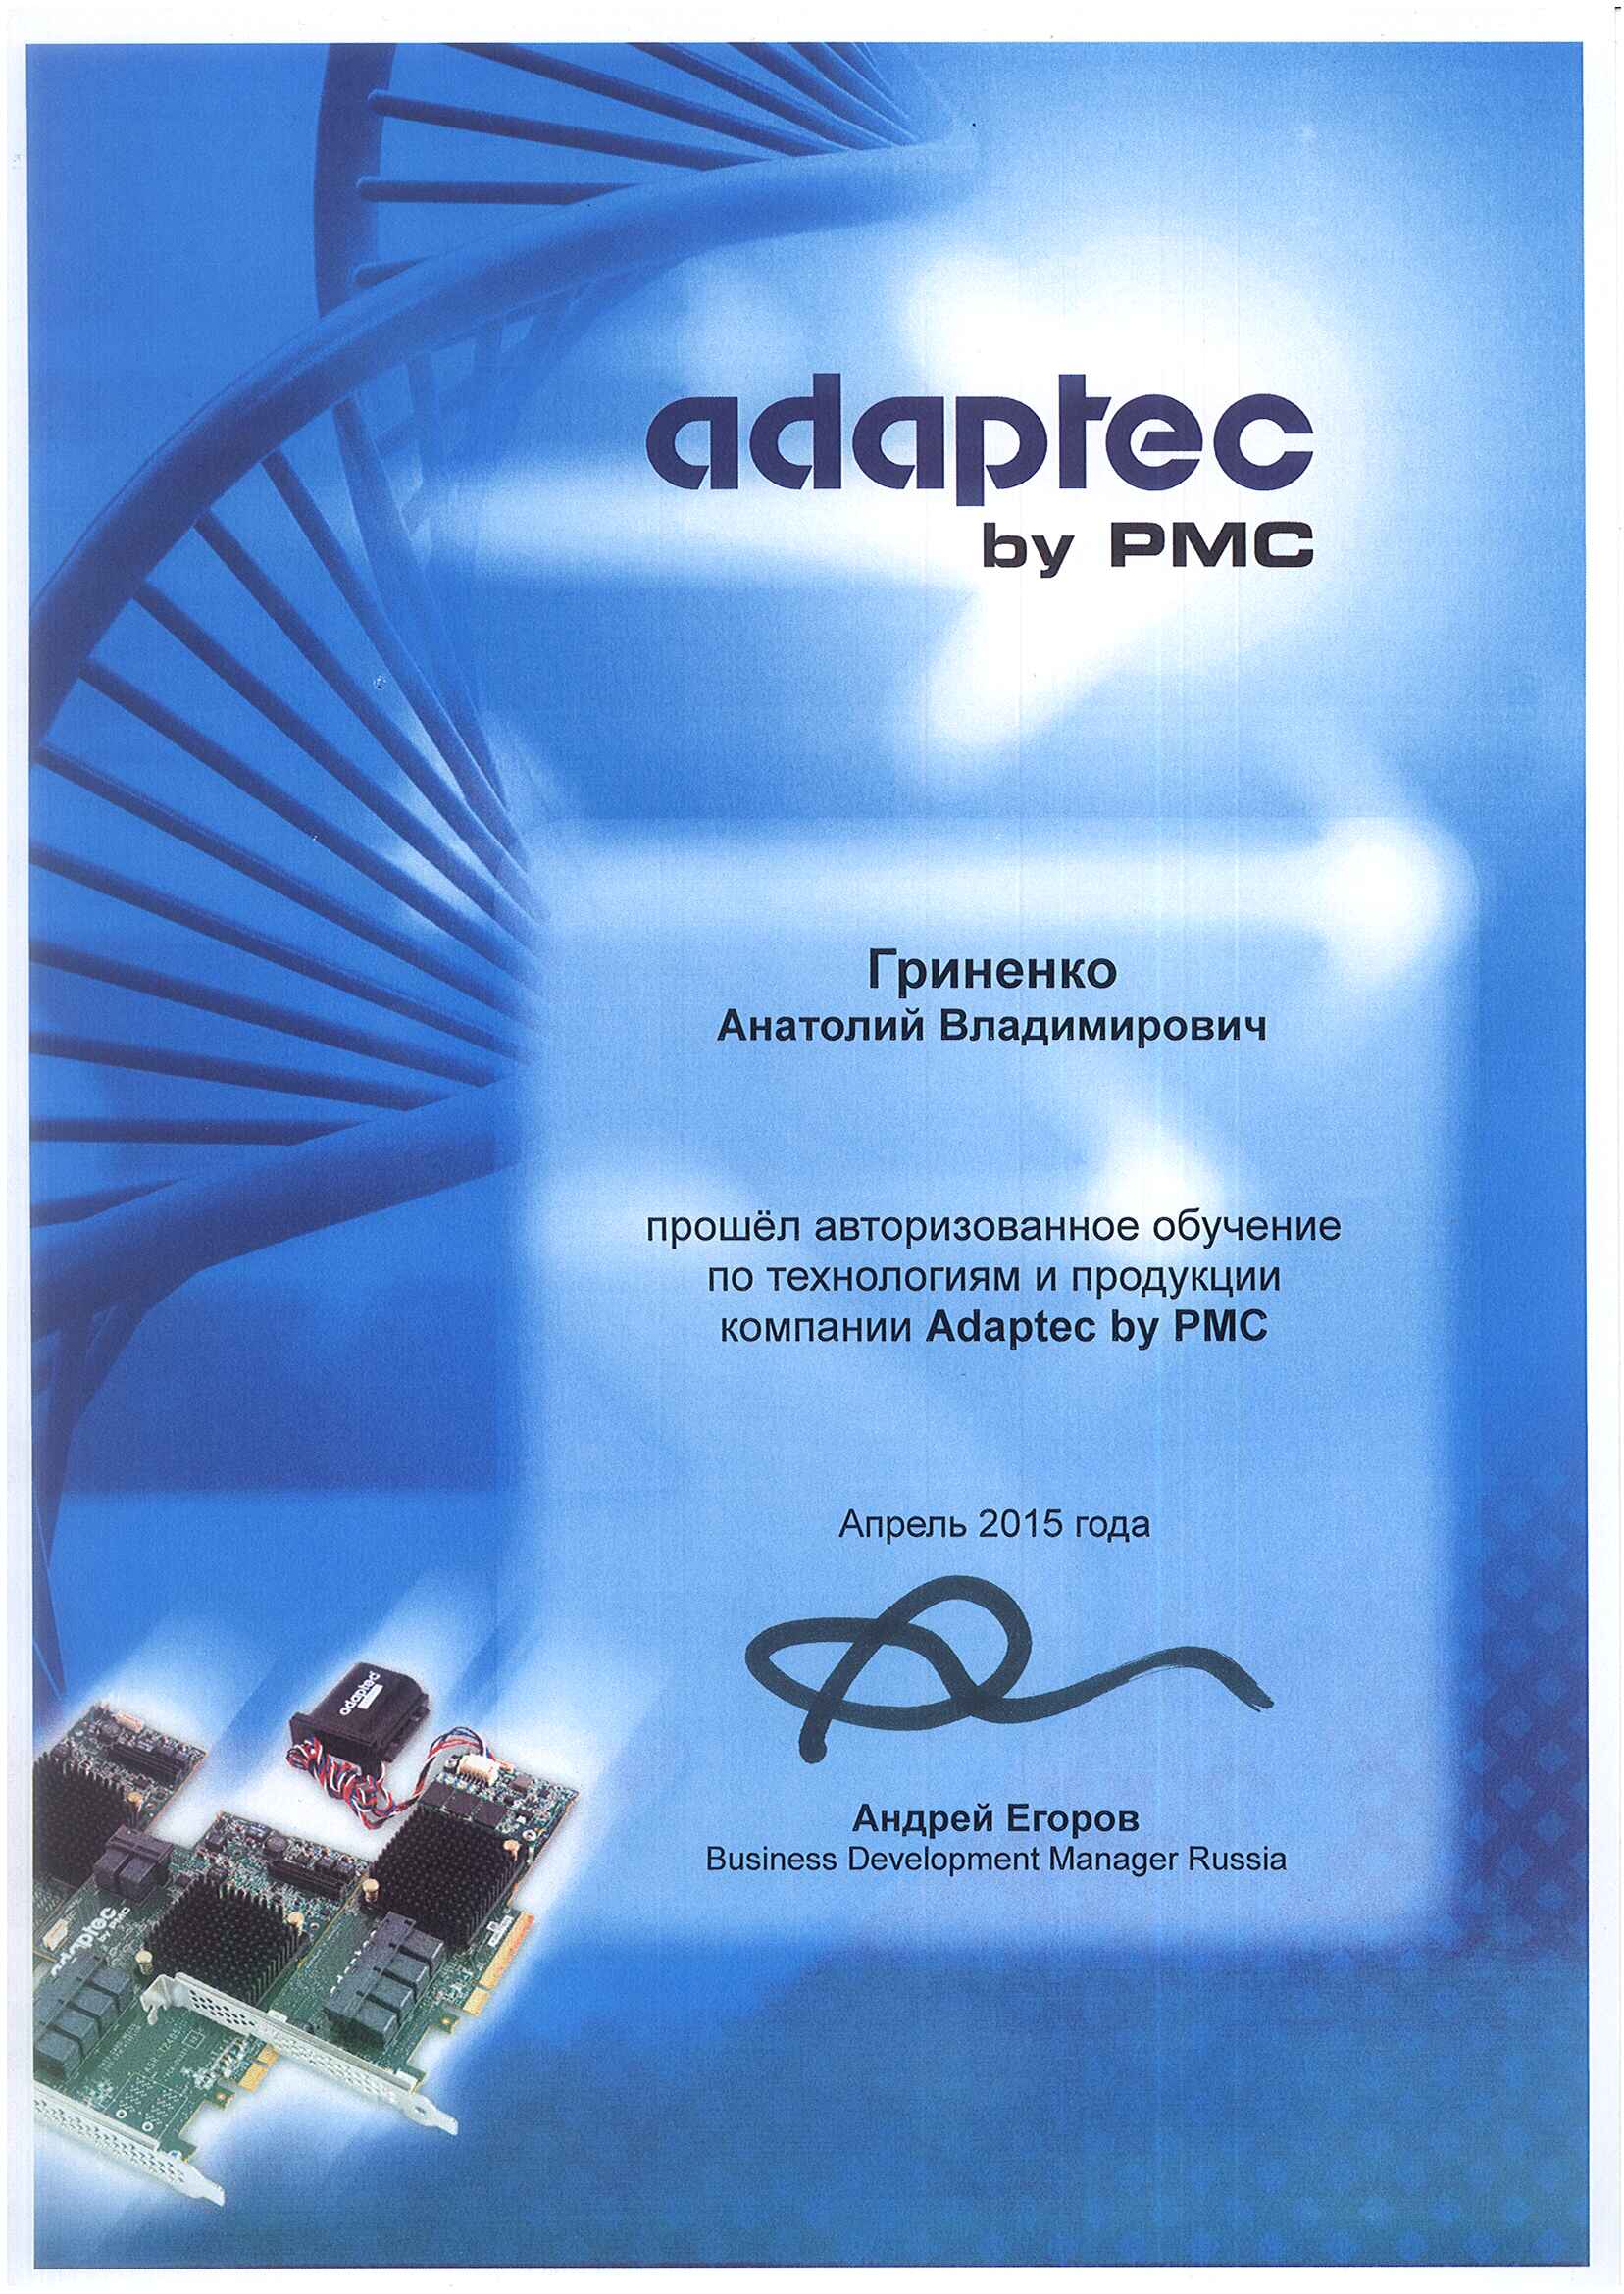 Сертификат Adaptec-Гриненко Анатолий Владимирович